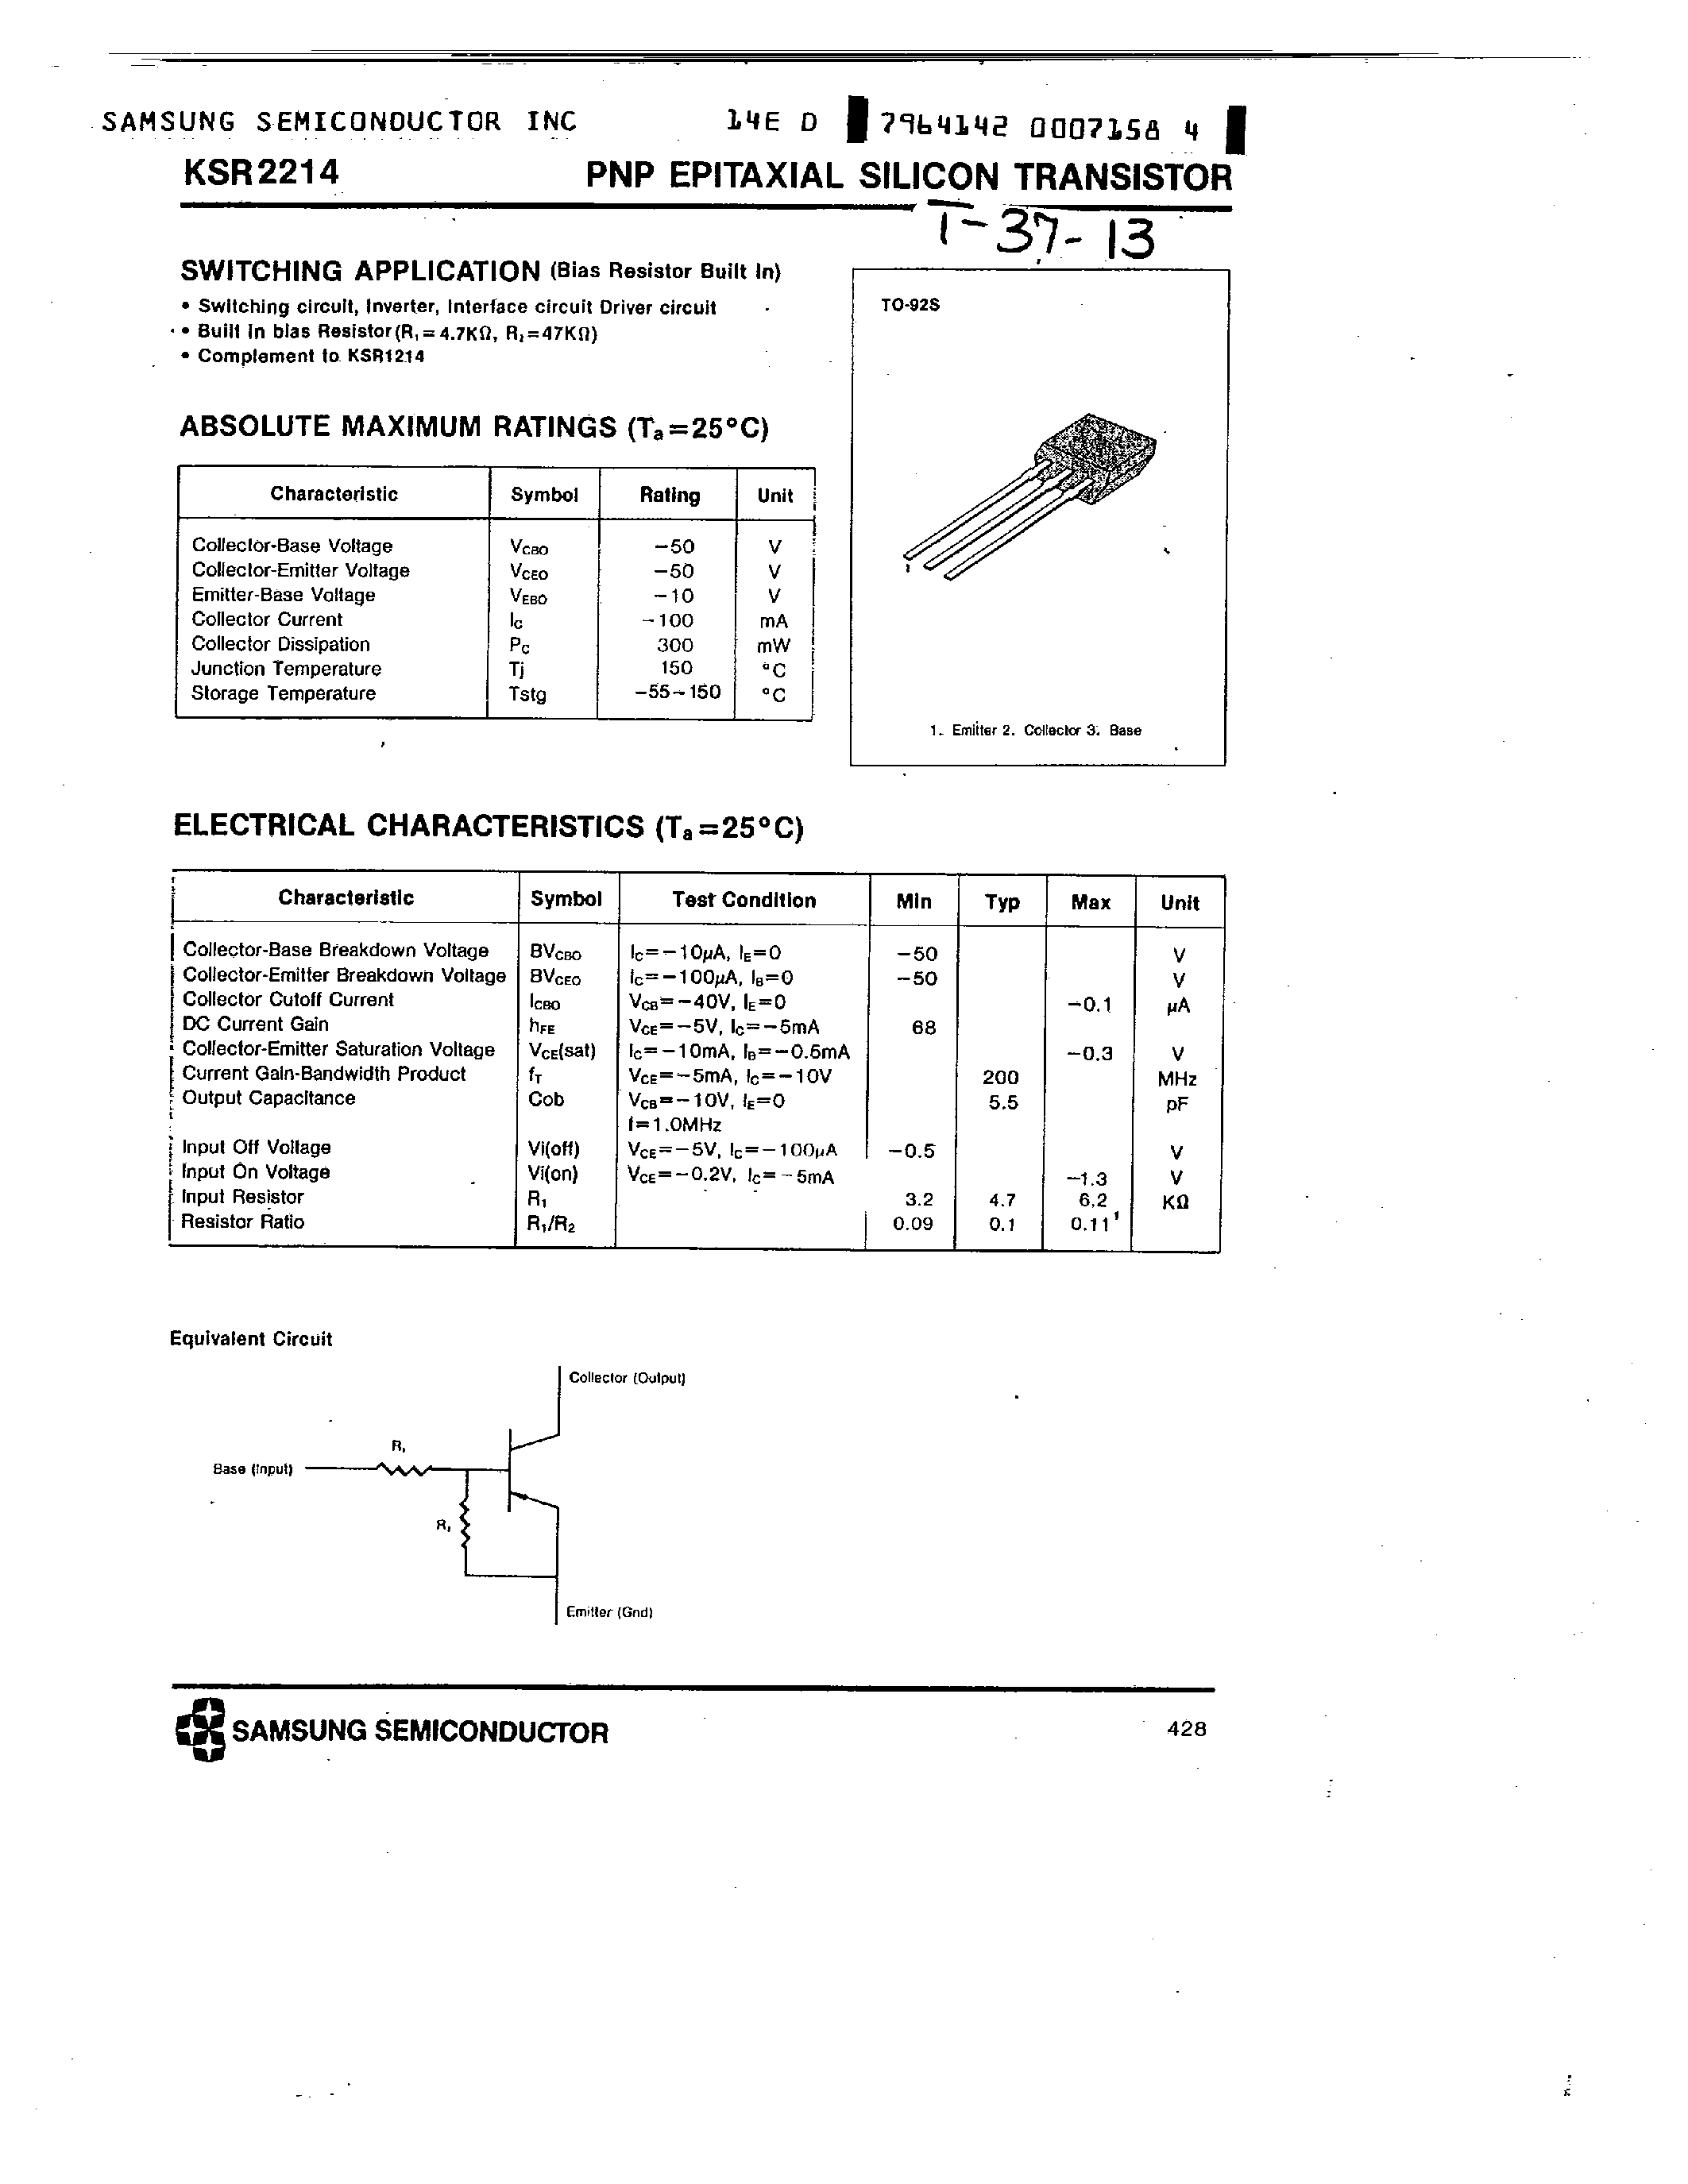 Datasheet KSR2214 - PNP (SWITCHING APPLICATION) page 1